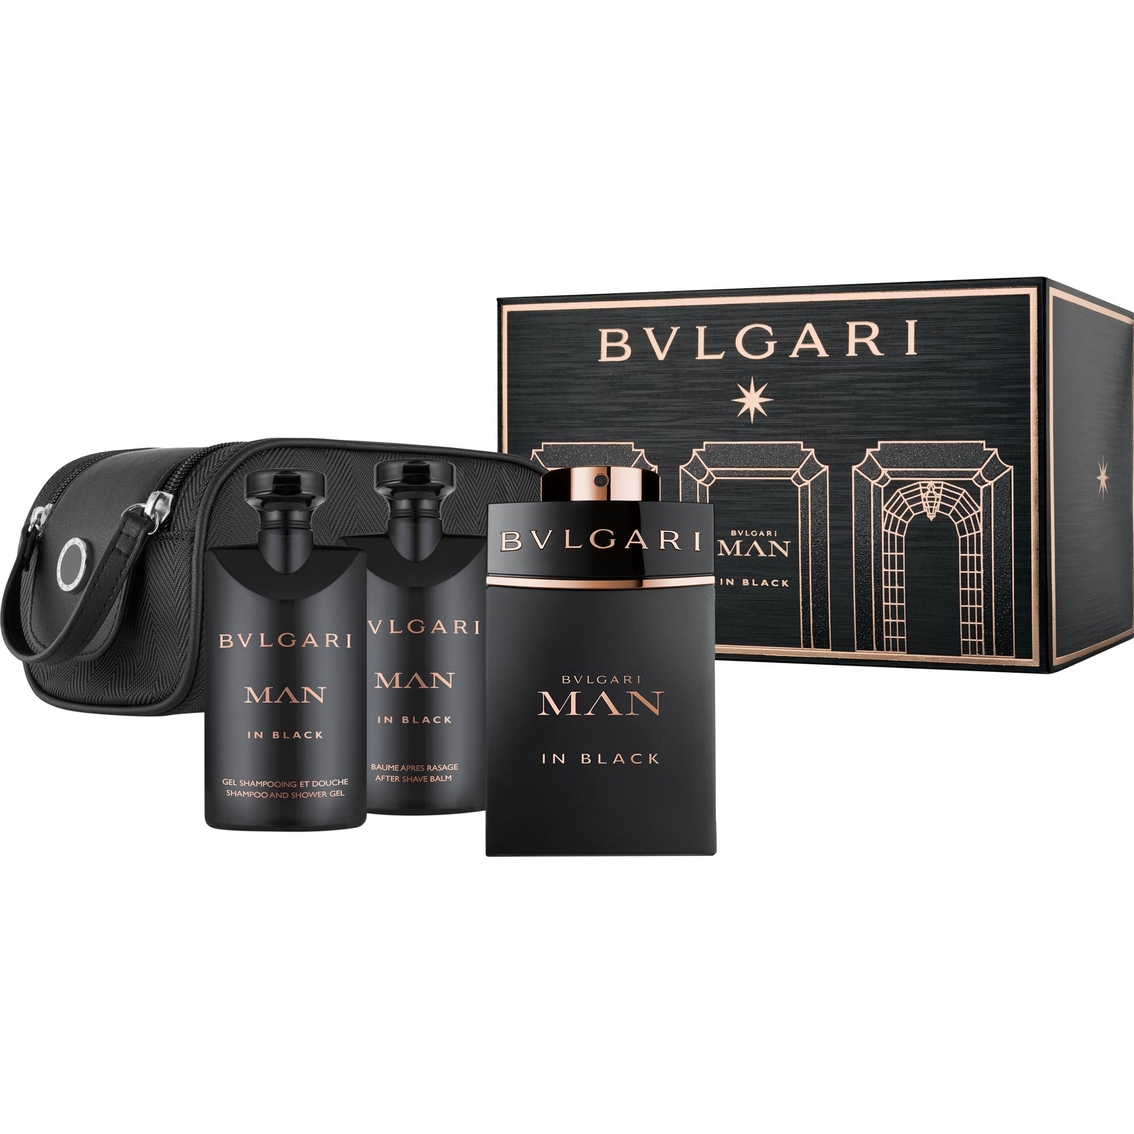 bvlgari perfume set man